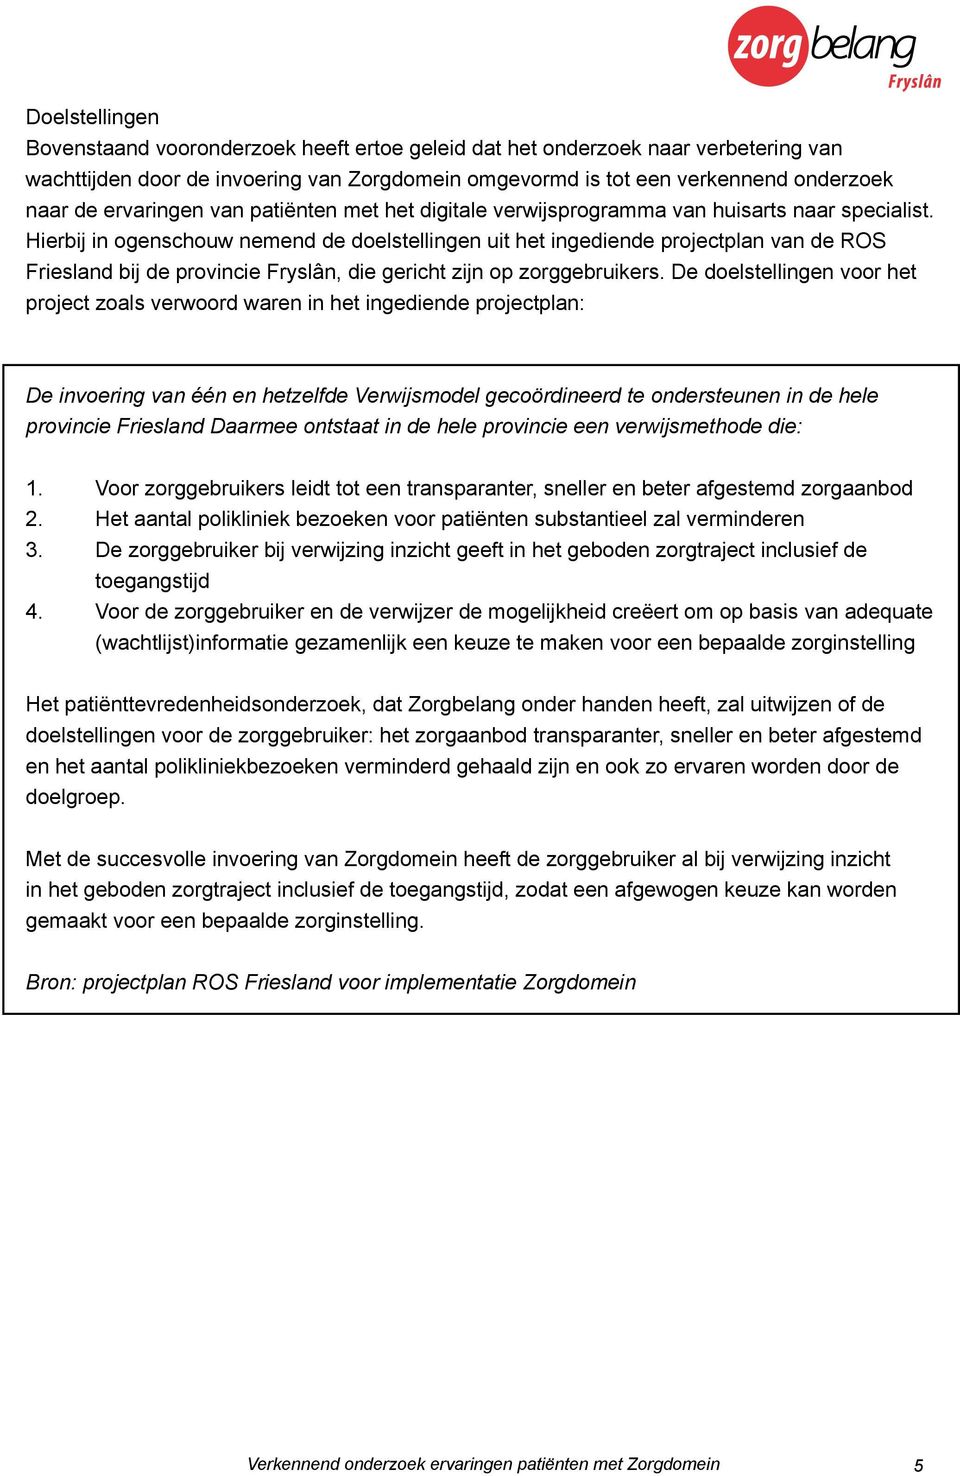 Hierbij in ogenschouw nemend de doelstellingen uit het ingediende projectplan van de ROS Friesland bij de provincie Fryslân, die gericht zijn op zorggebruikers.